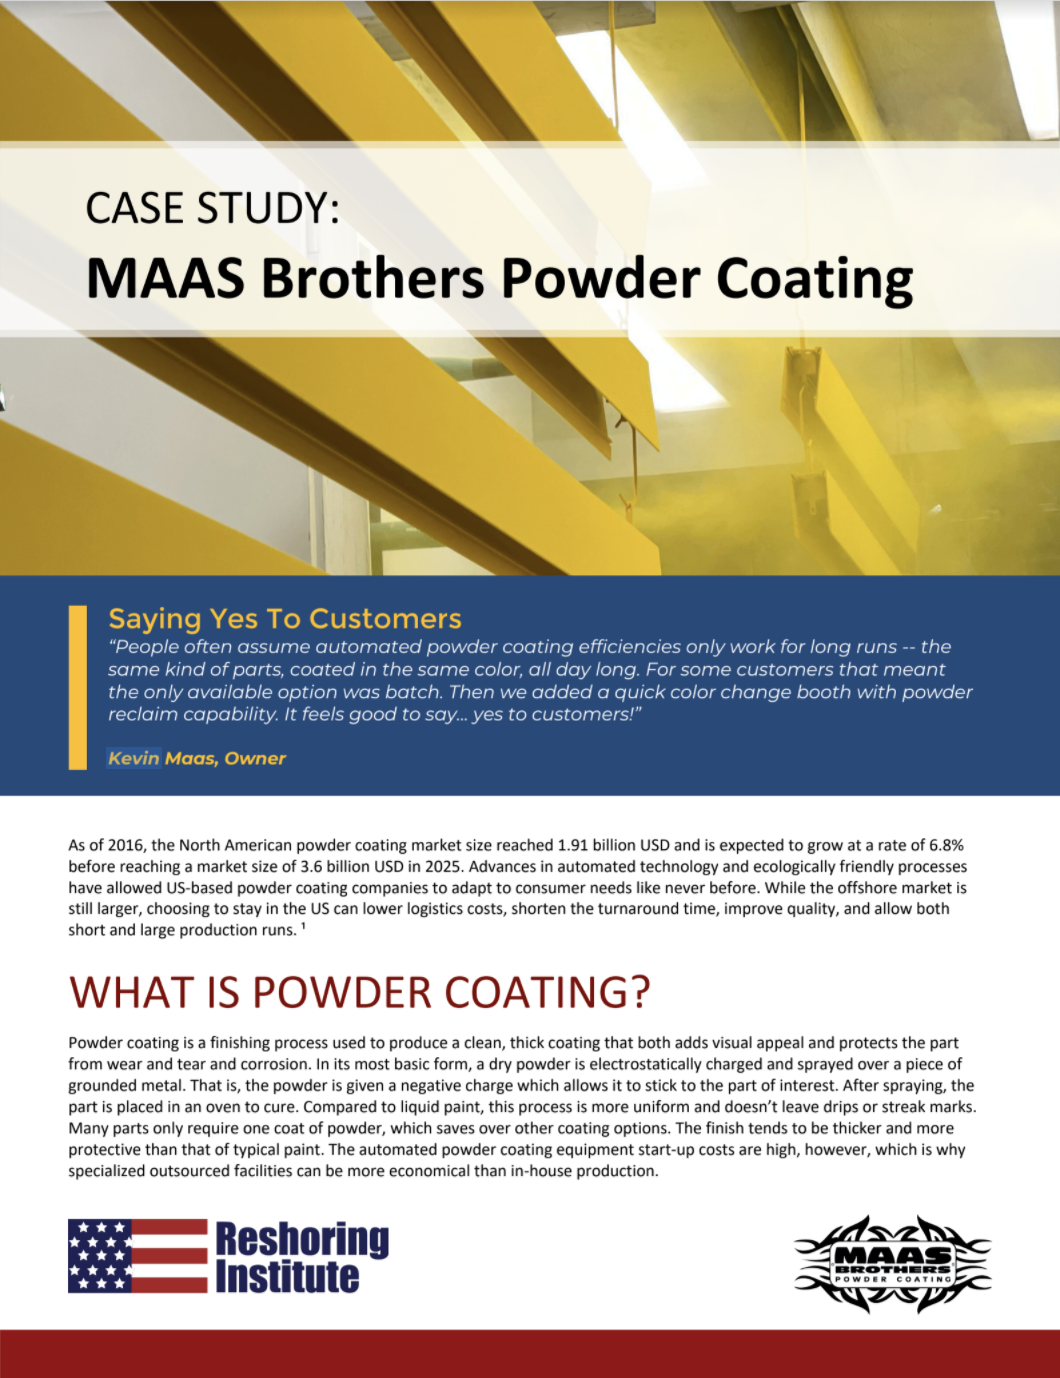 MAAS Brothers Powder Coating